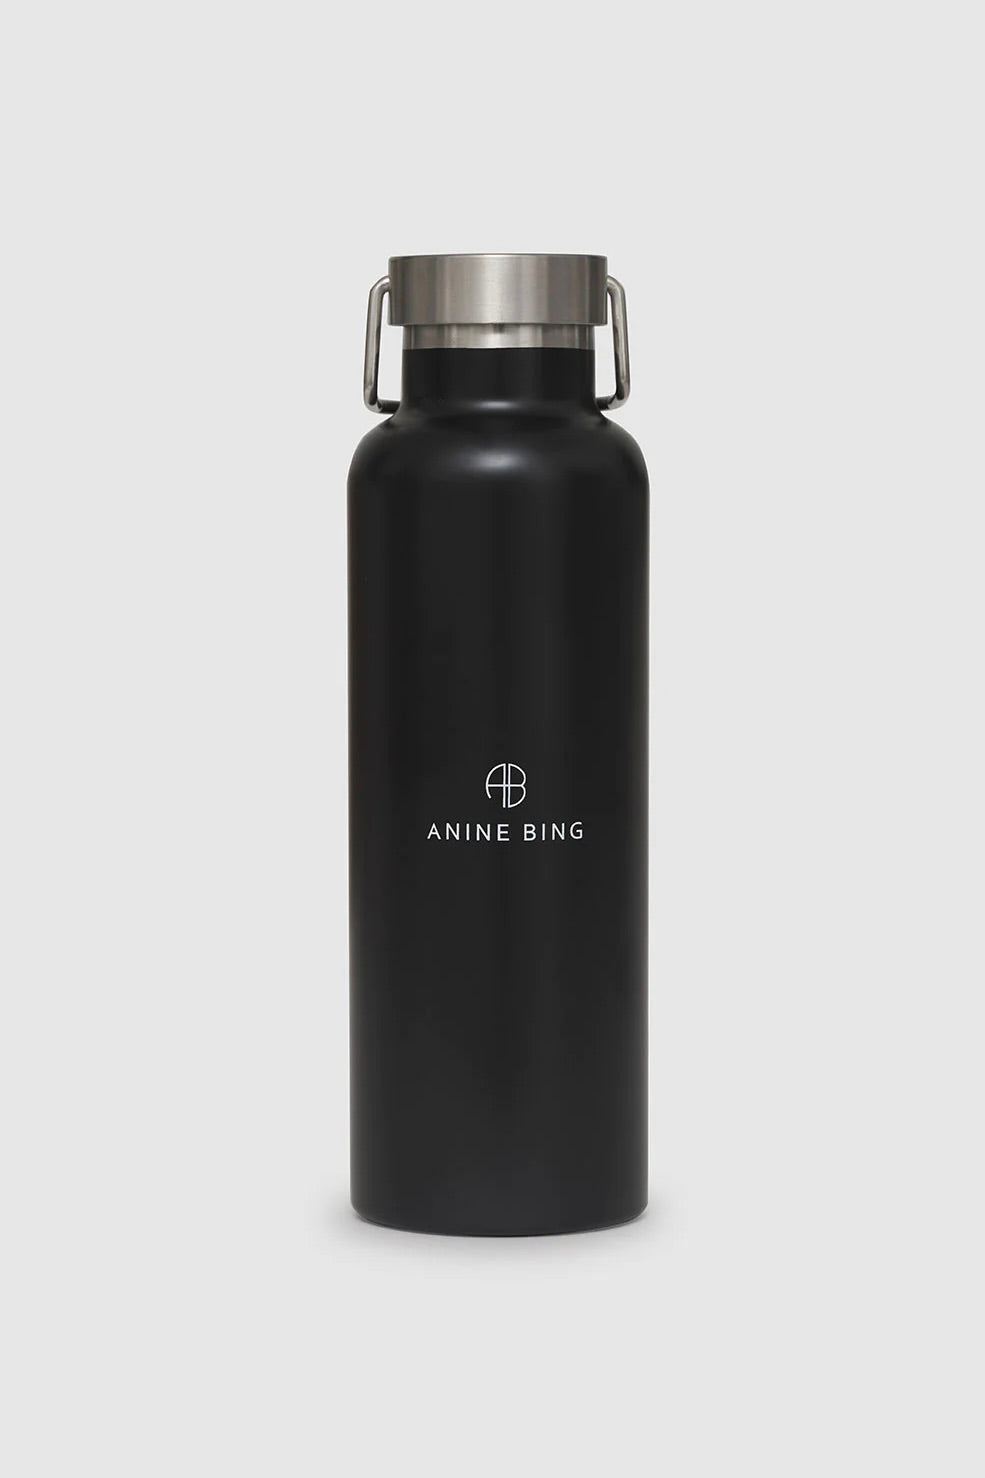 ANINE BING - AB Water Bottle - Dale